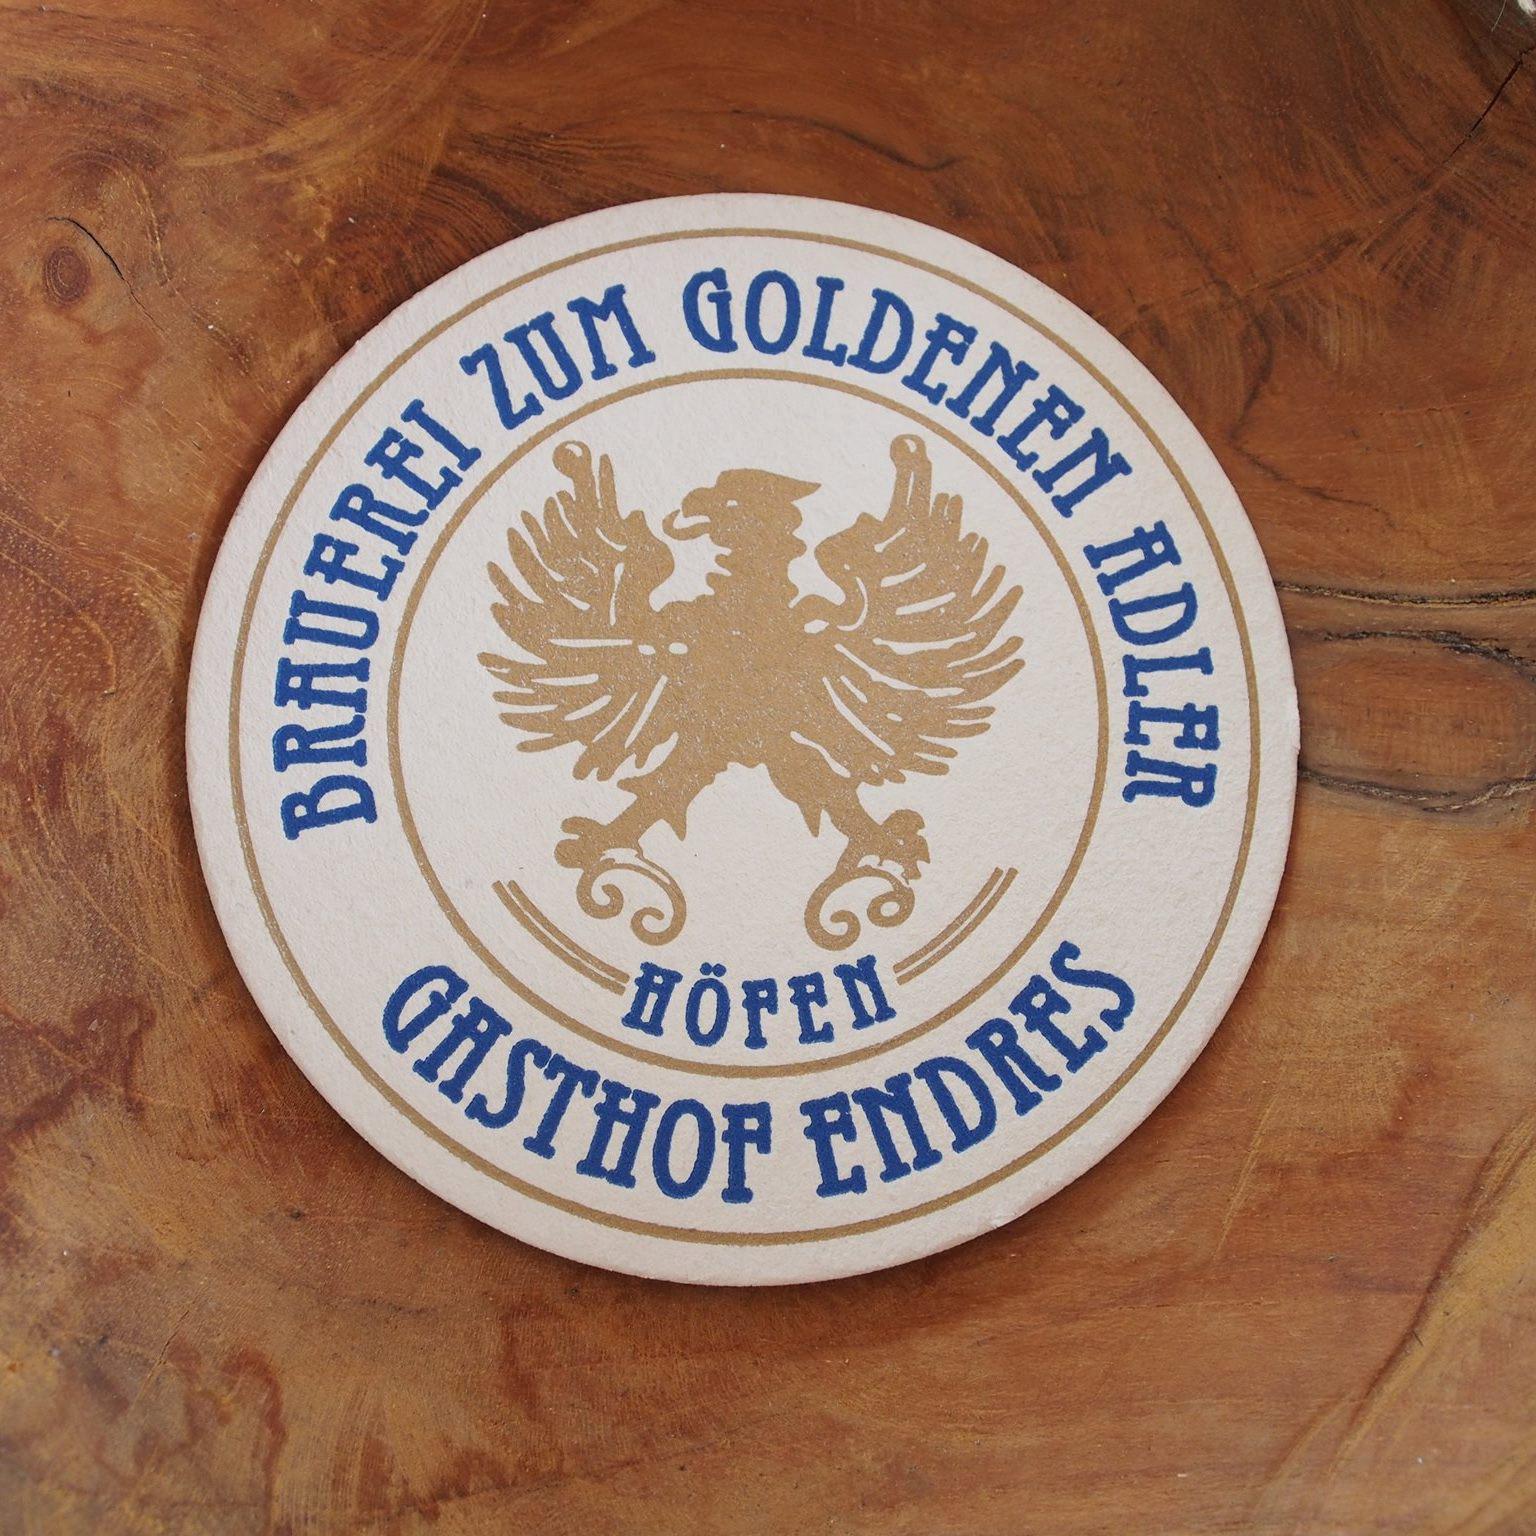 Bilder Brauerei Zum Goldenen Adler Gasthof Endres